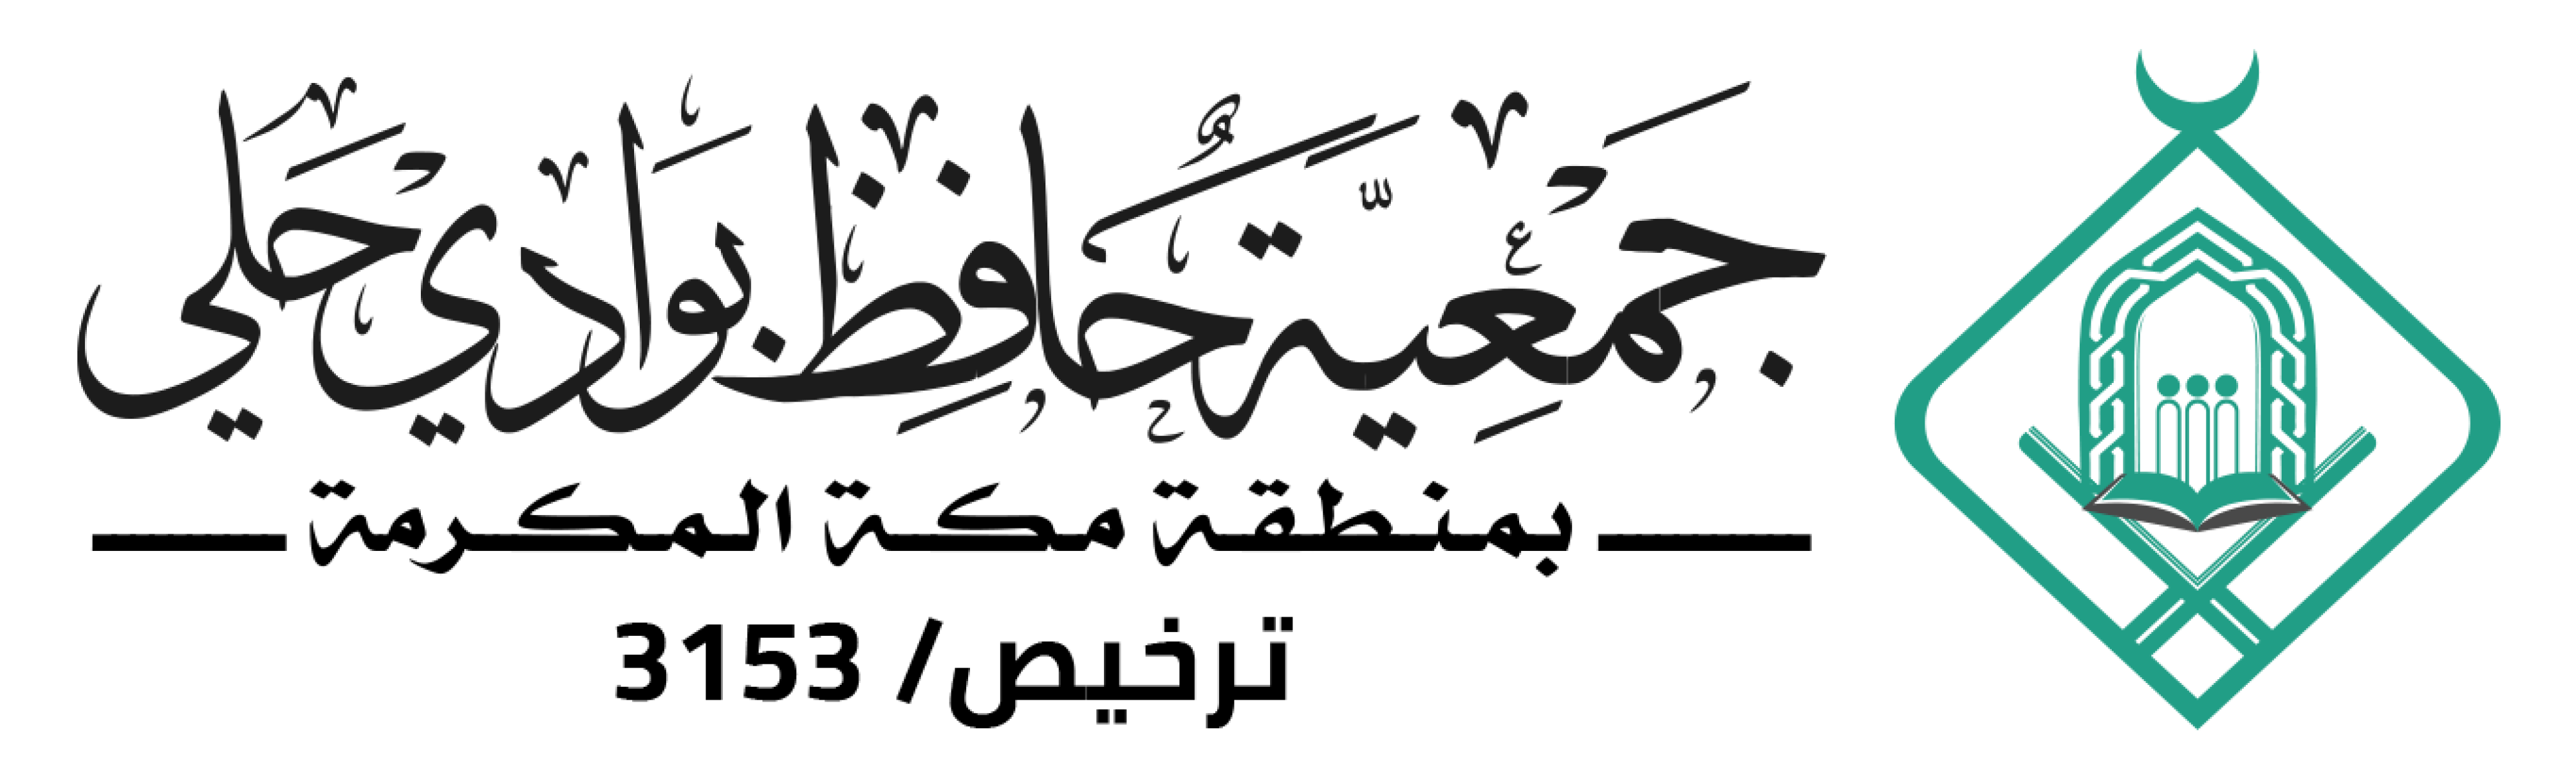 الجمعية الخيرية لتحفيظ القرآن الكريم بحلي 